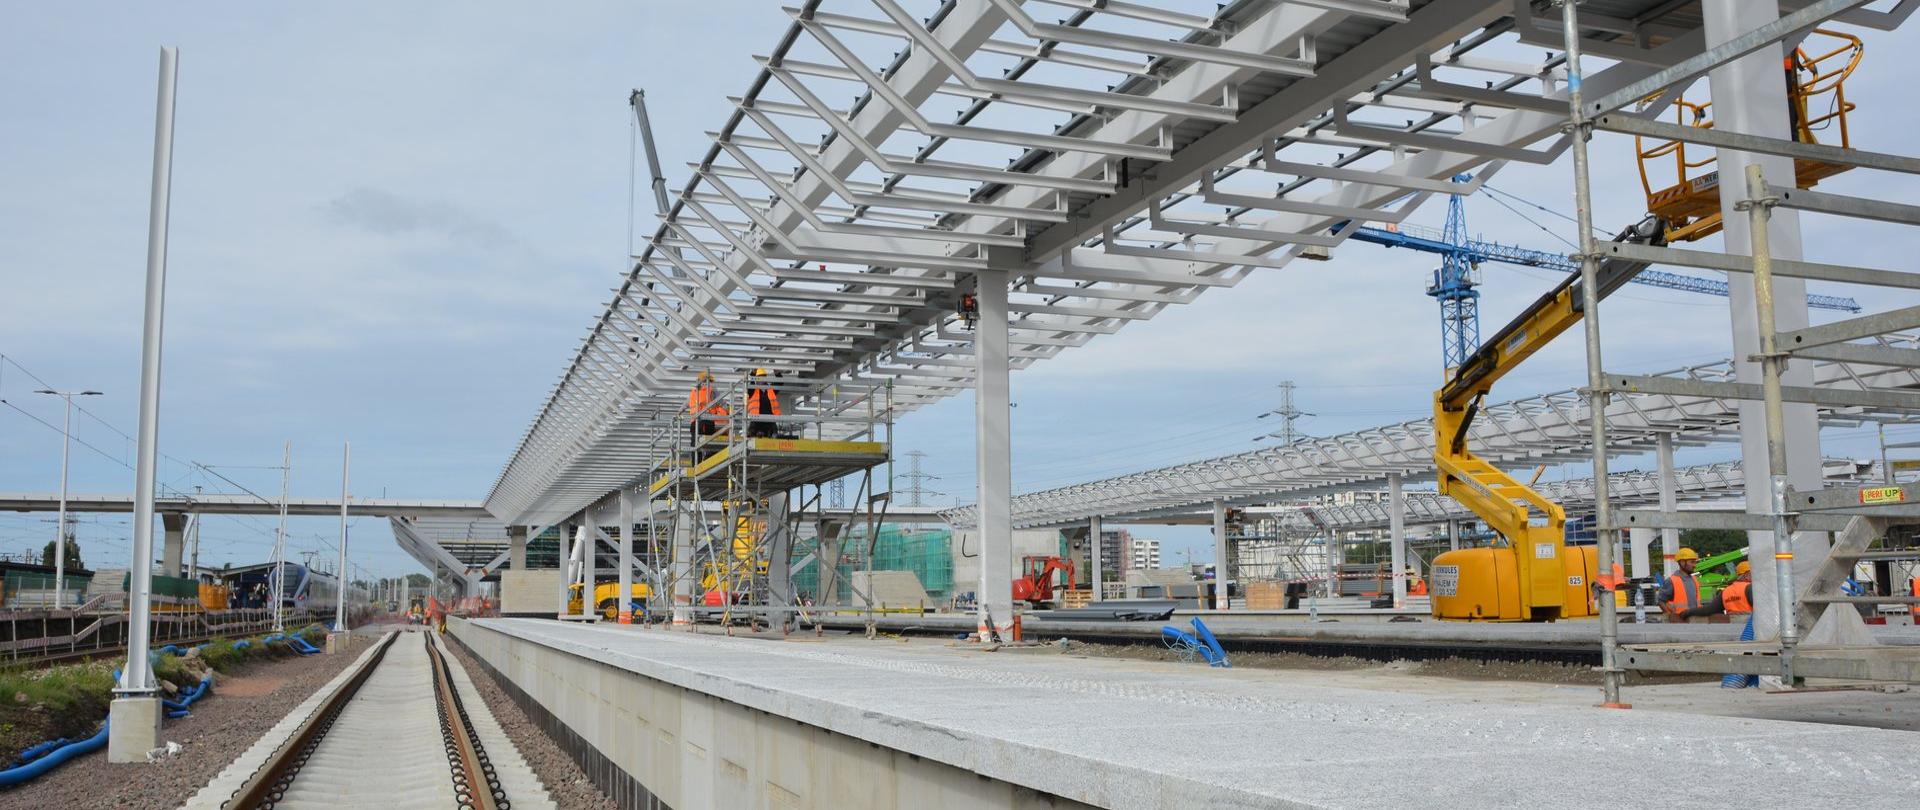 Konstrukcja wiaty na nowo budowanym peronie na stacji Warszawa Zachodnia